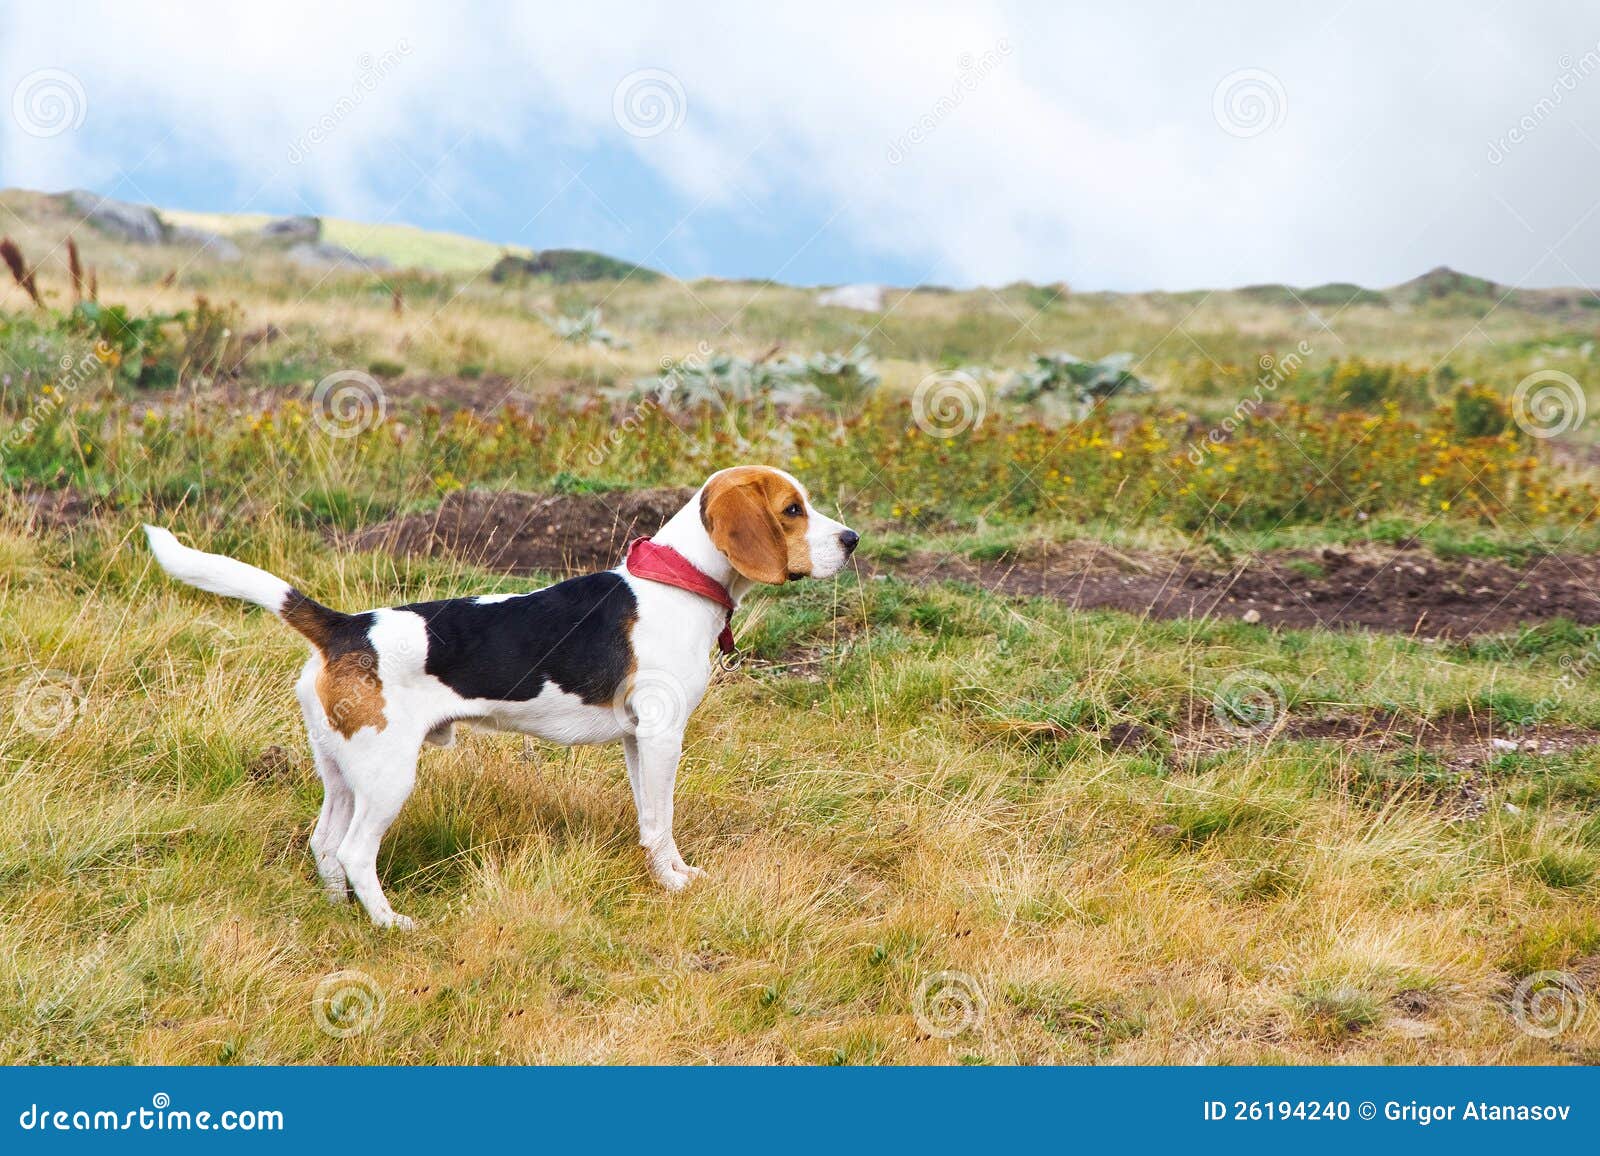 ekskrementer I øvrigt kredit Beagle dog in nature stock photo. Image of lovely, cute - 26194240